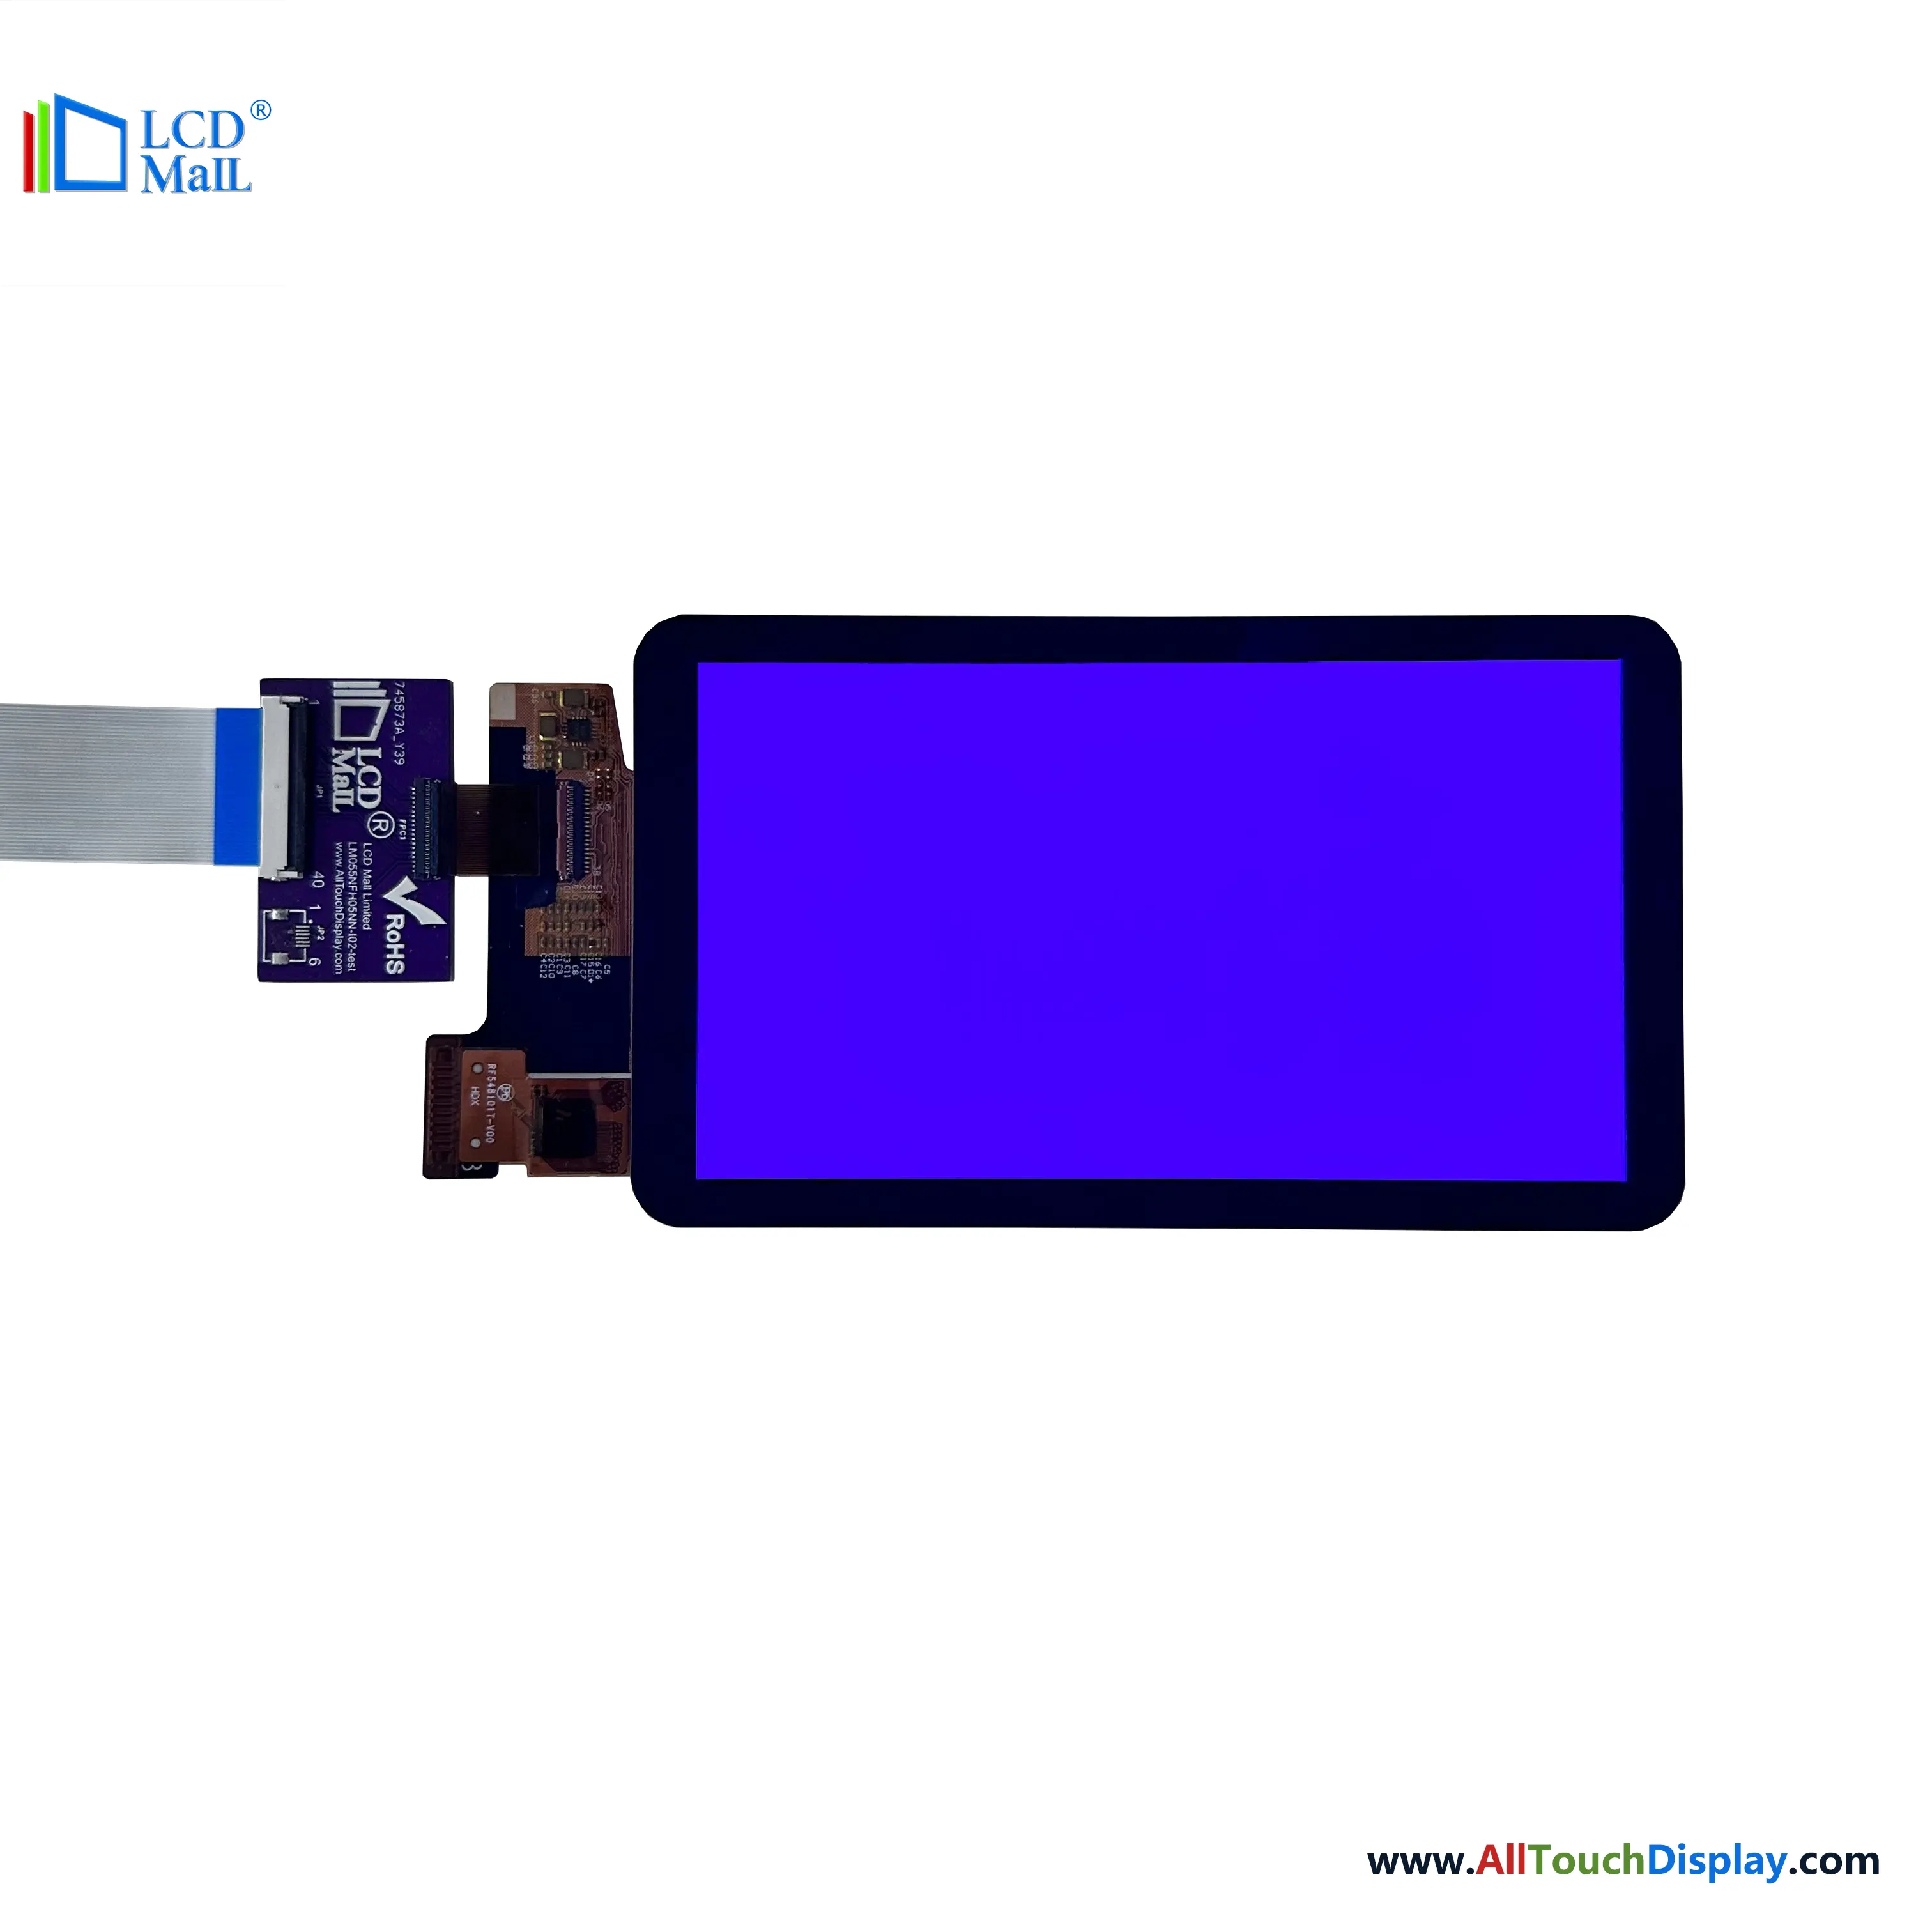 Pantalla LCD AMOLED FHD de 5,5 pulgadas con protección de cubierta de interfaz Oncell Touch Mipi para teléfono móvil